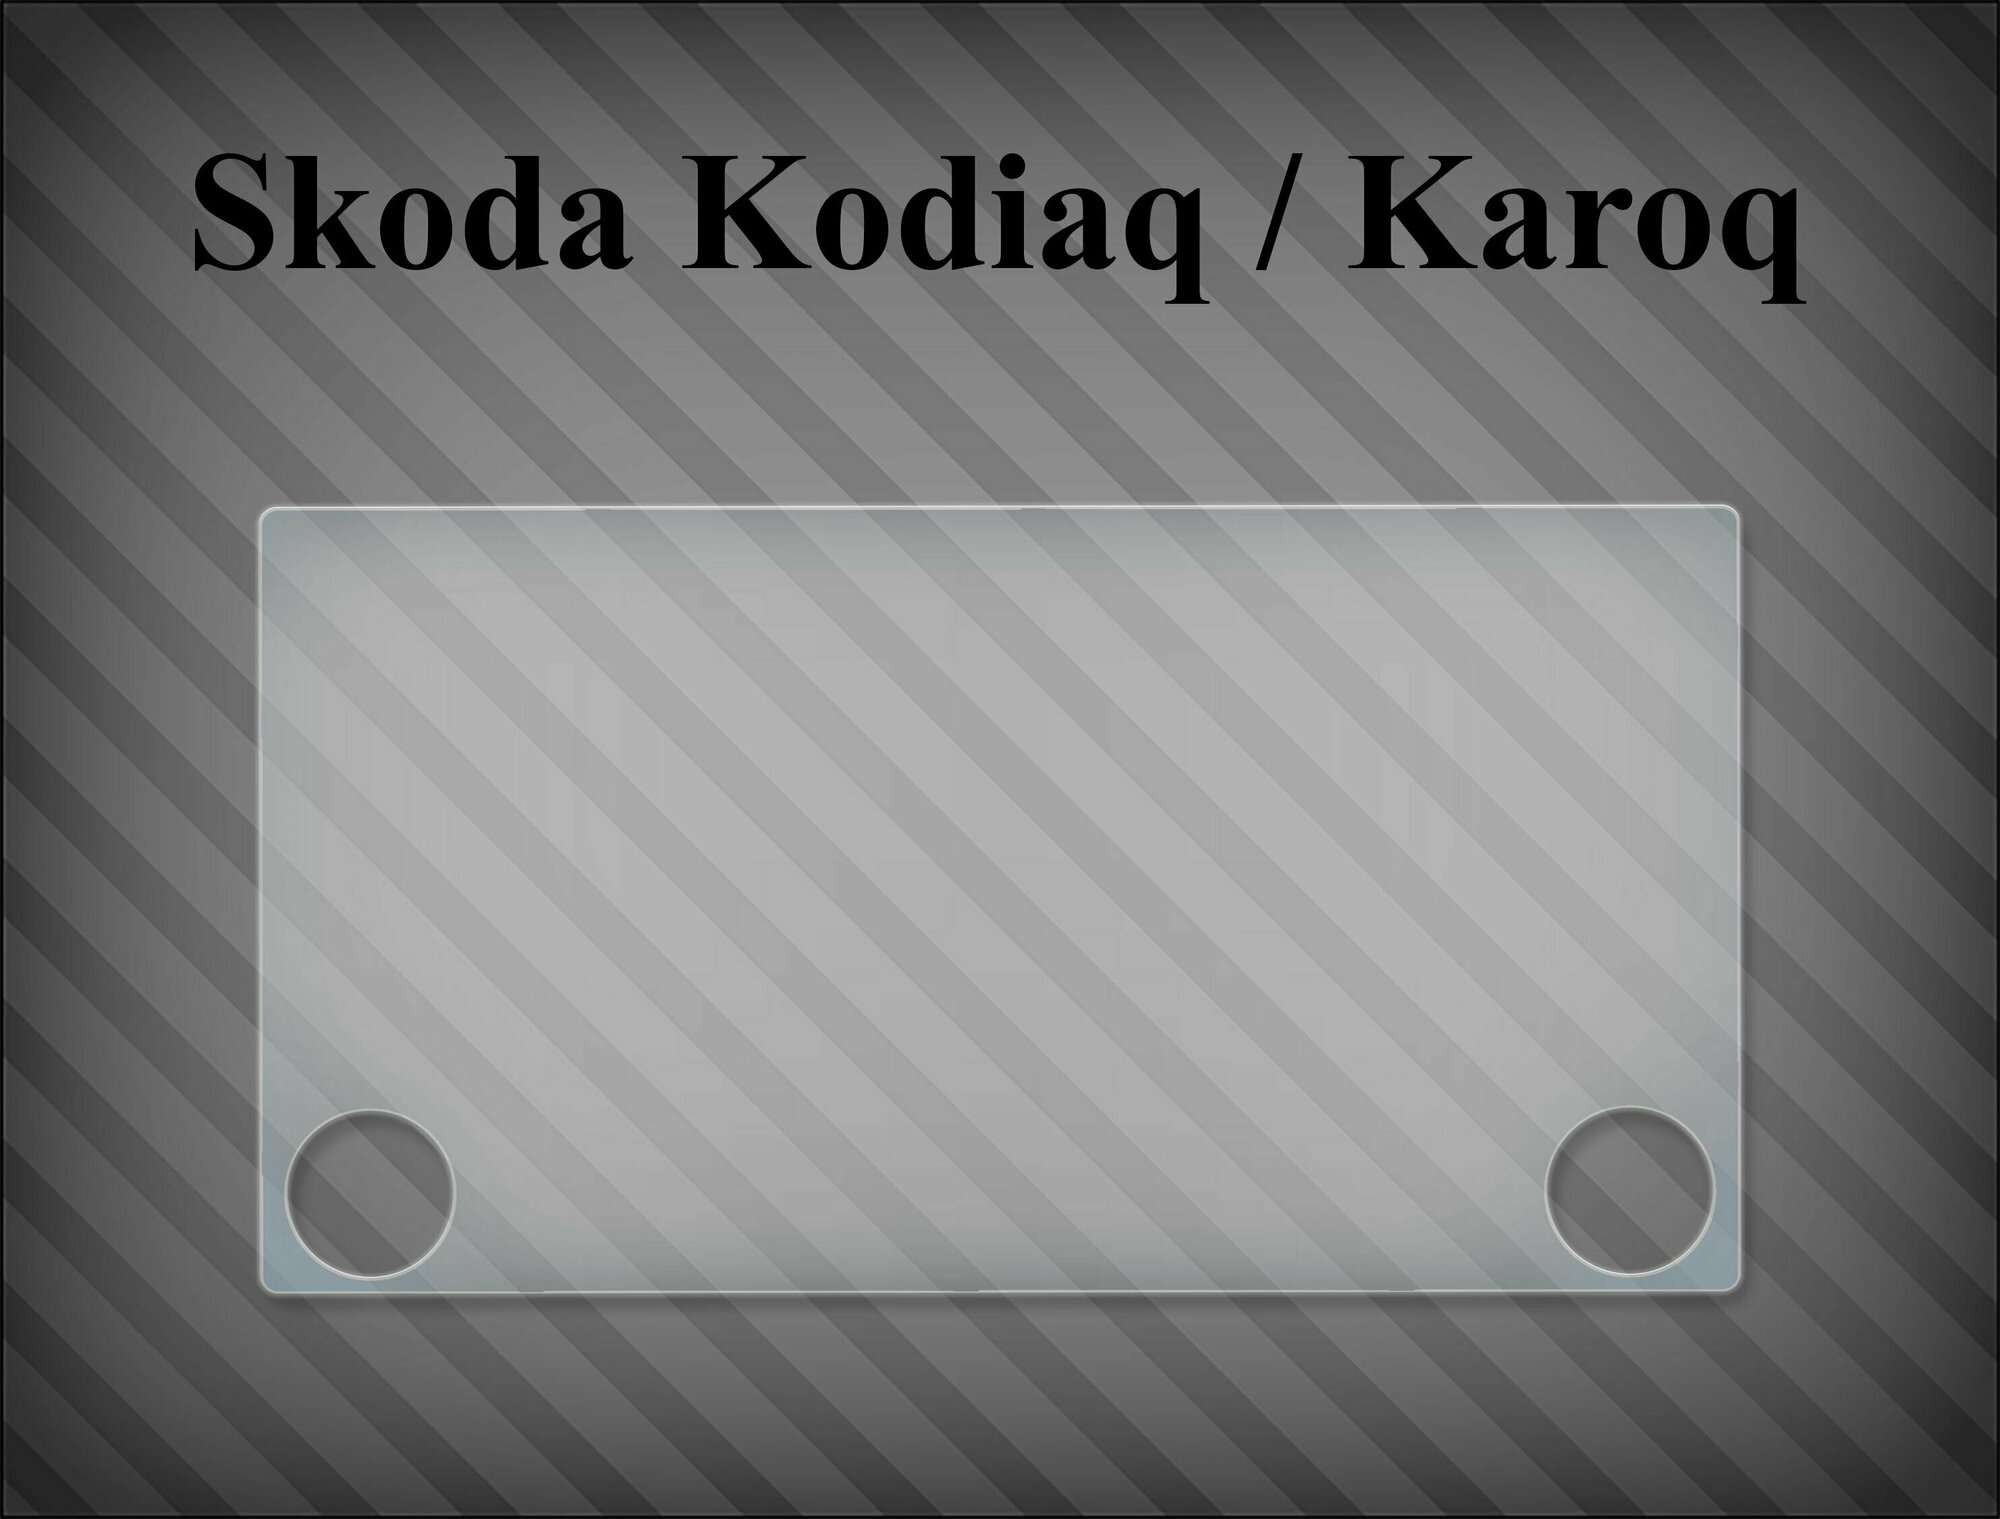 Защитная пленка на магнитолу Skoda Kodiaq / Karoq v1